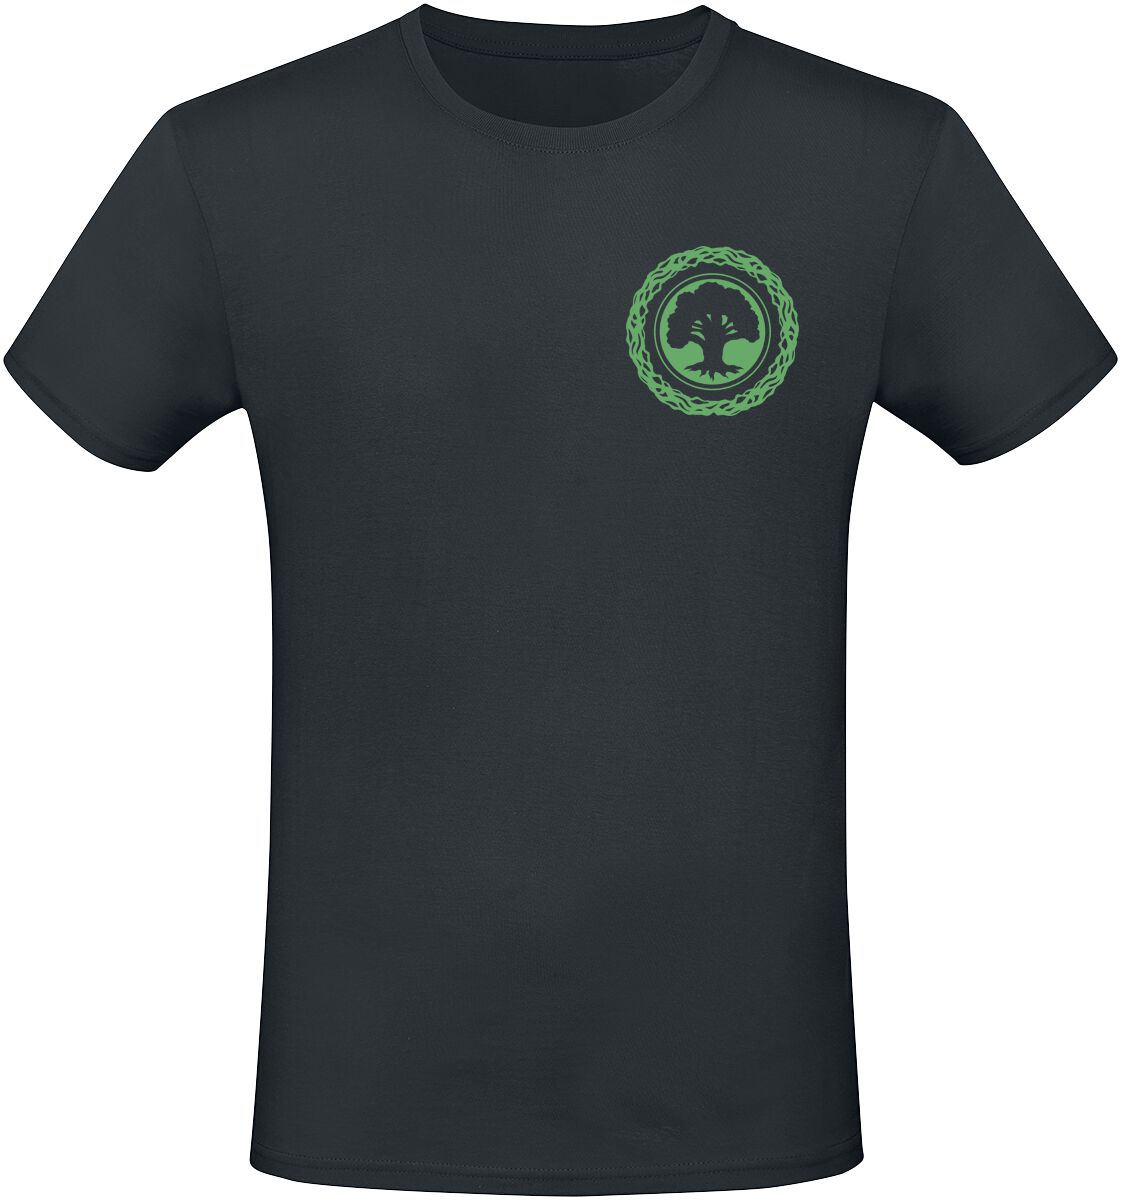 Magic: The Gathering - Gaming T-Shirt - Green Mana - S bis XXL - für Männer - Größe M - schwarz  - EMP exklusives Merchandise! von Magic: The Gathering